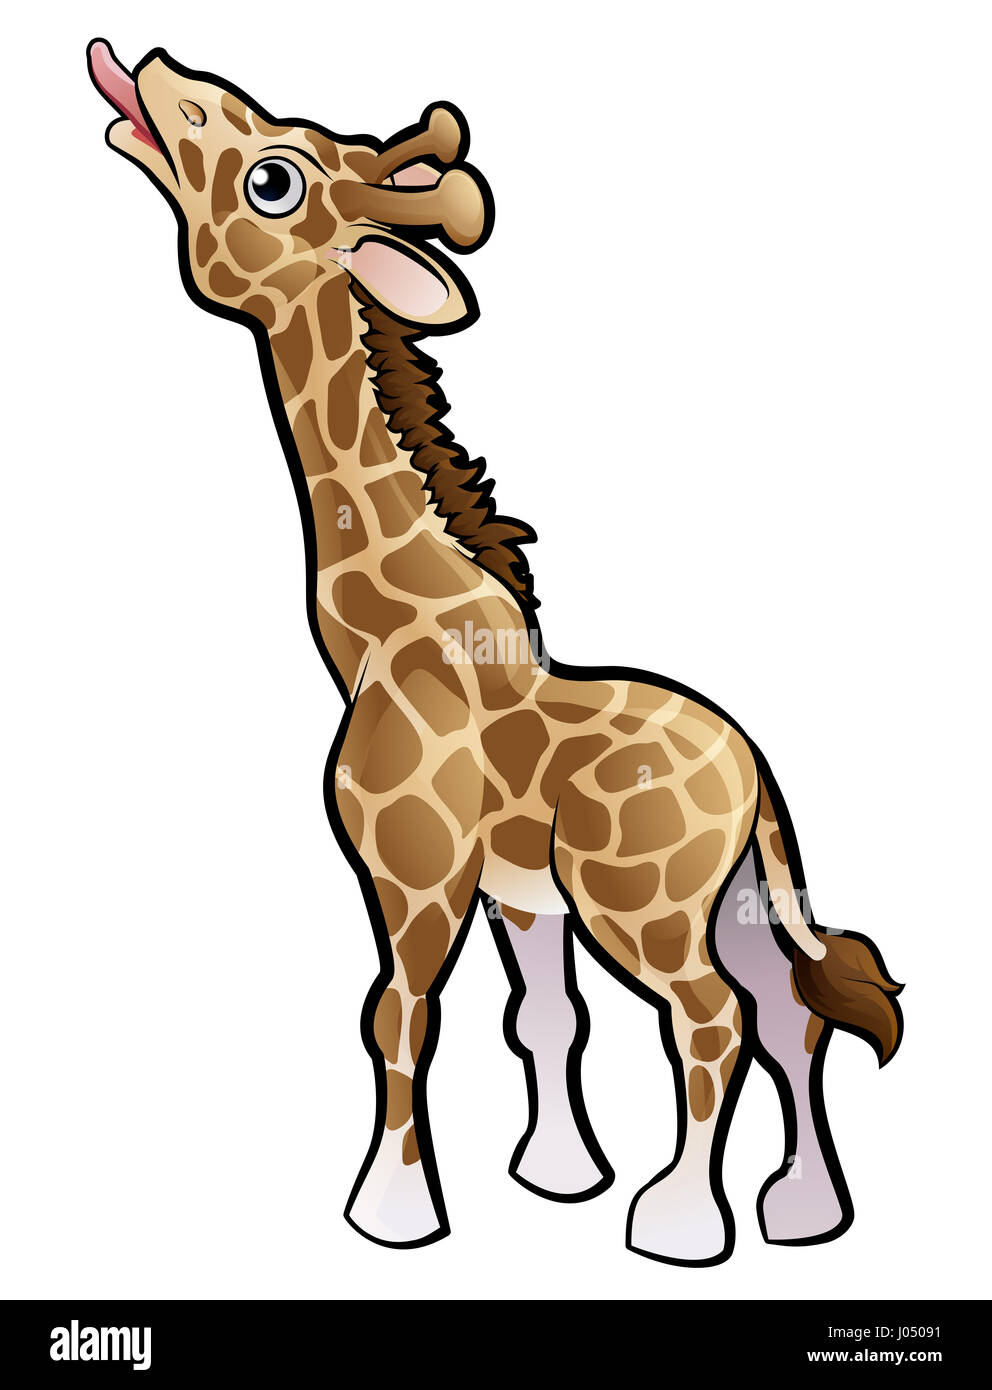 A giraffe safari animals cartoon character Stock Photo